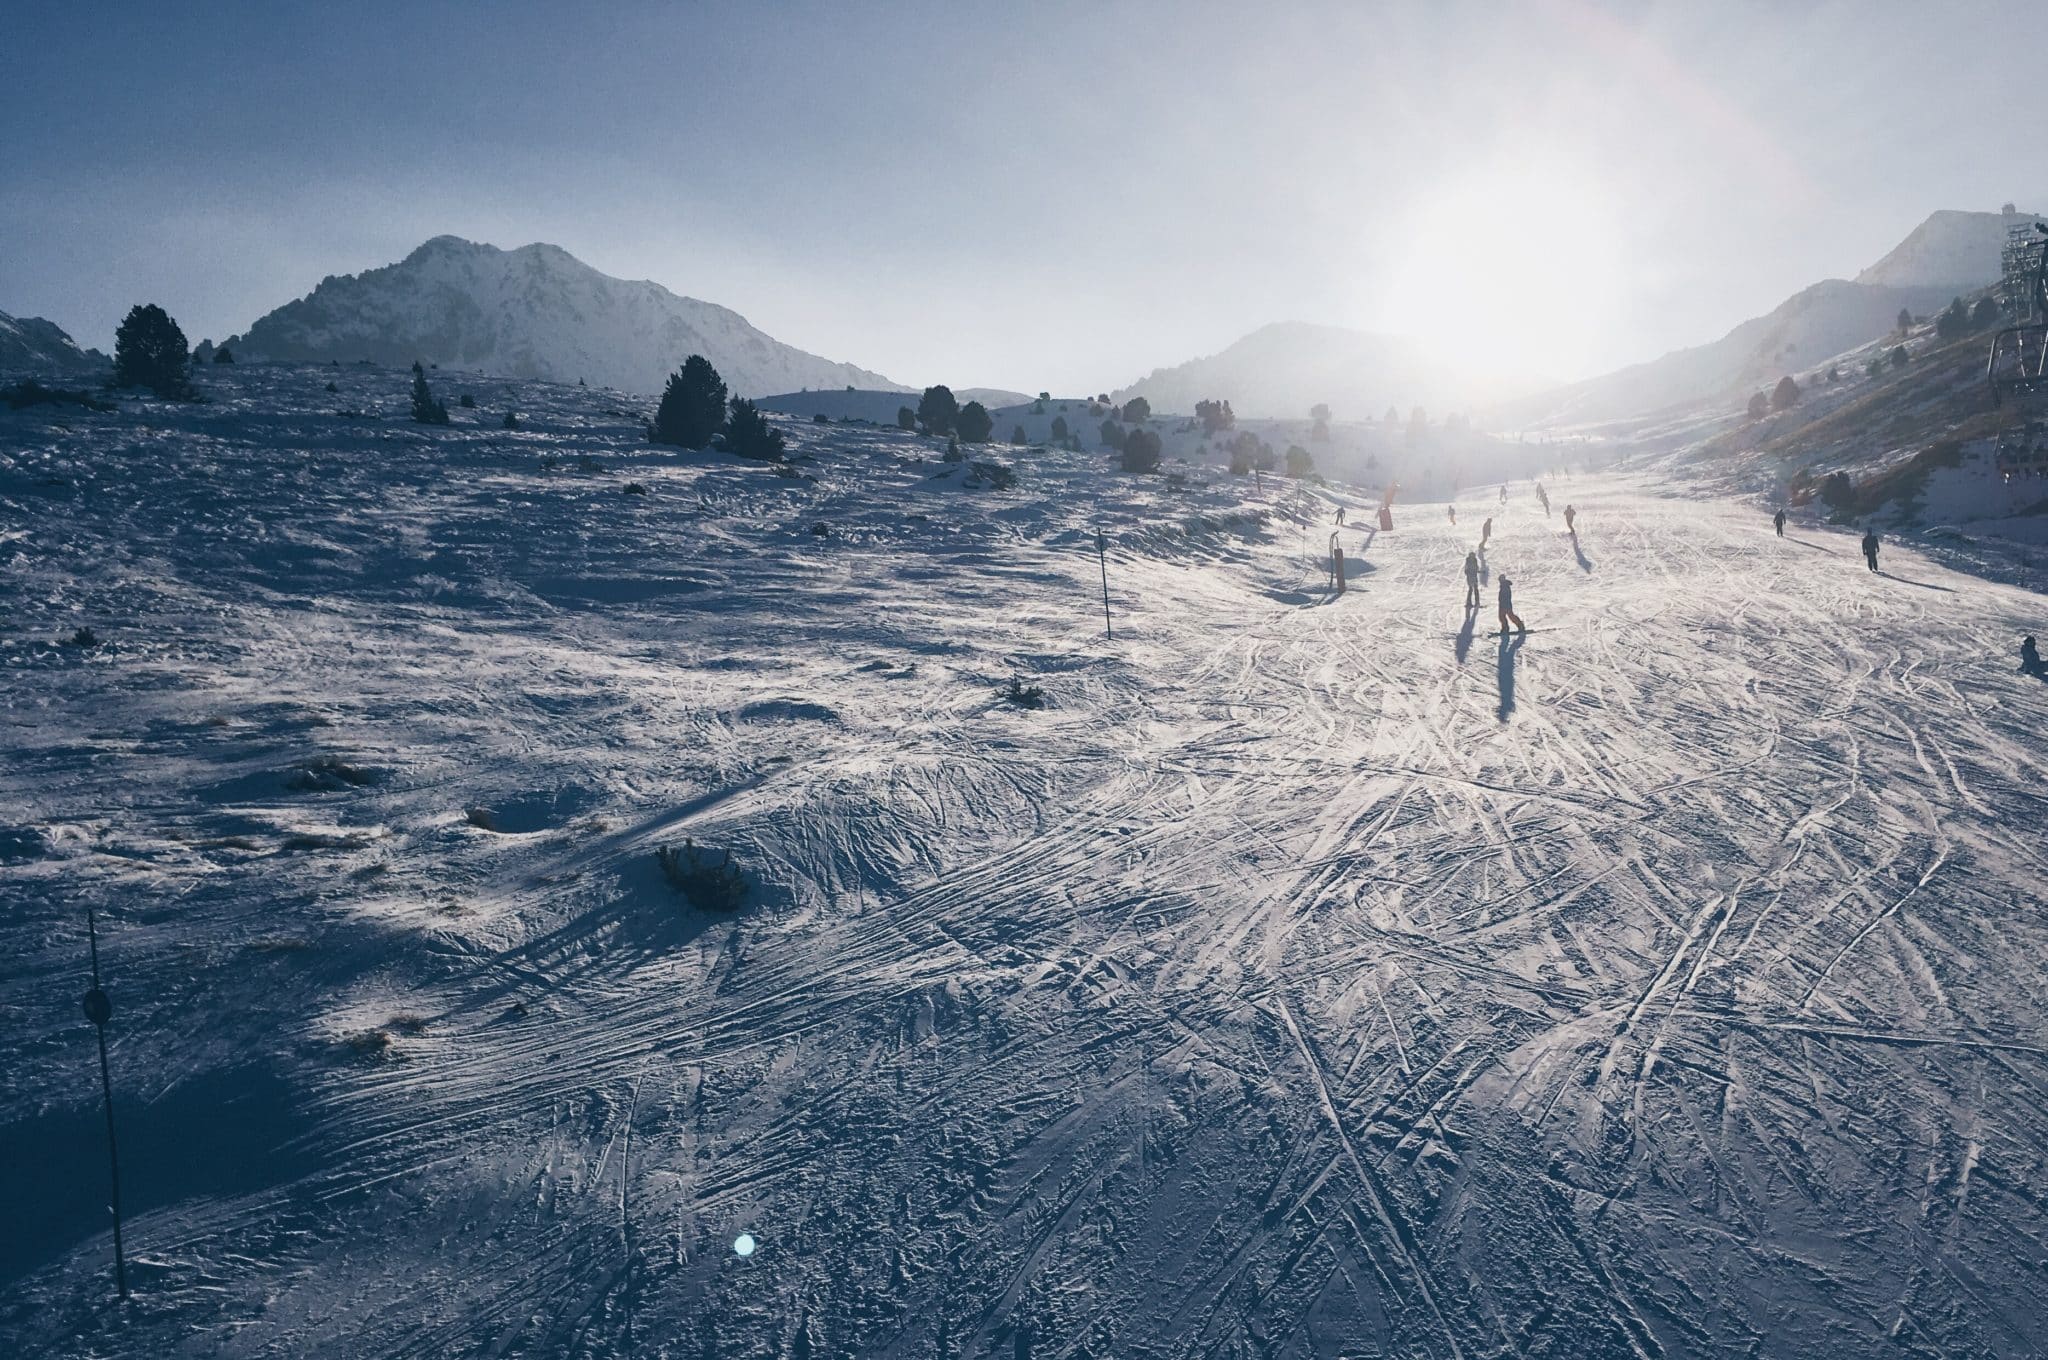 Sol i neu esperem que trobeu quan visiteu l'estació d'esquí d'Arinsal.